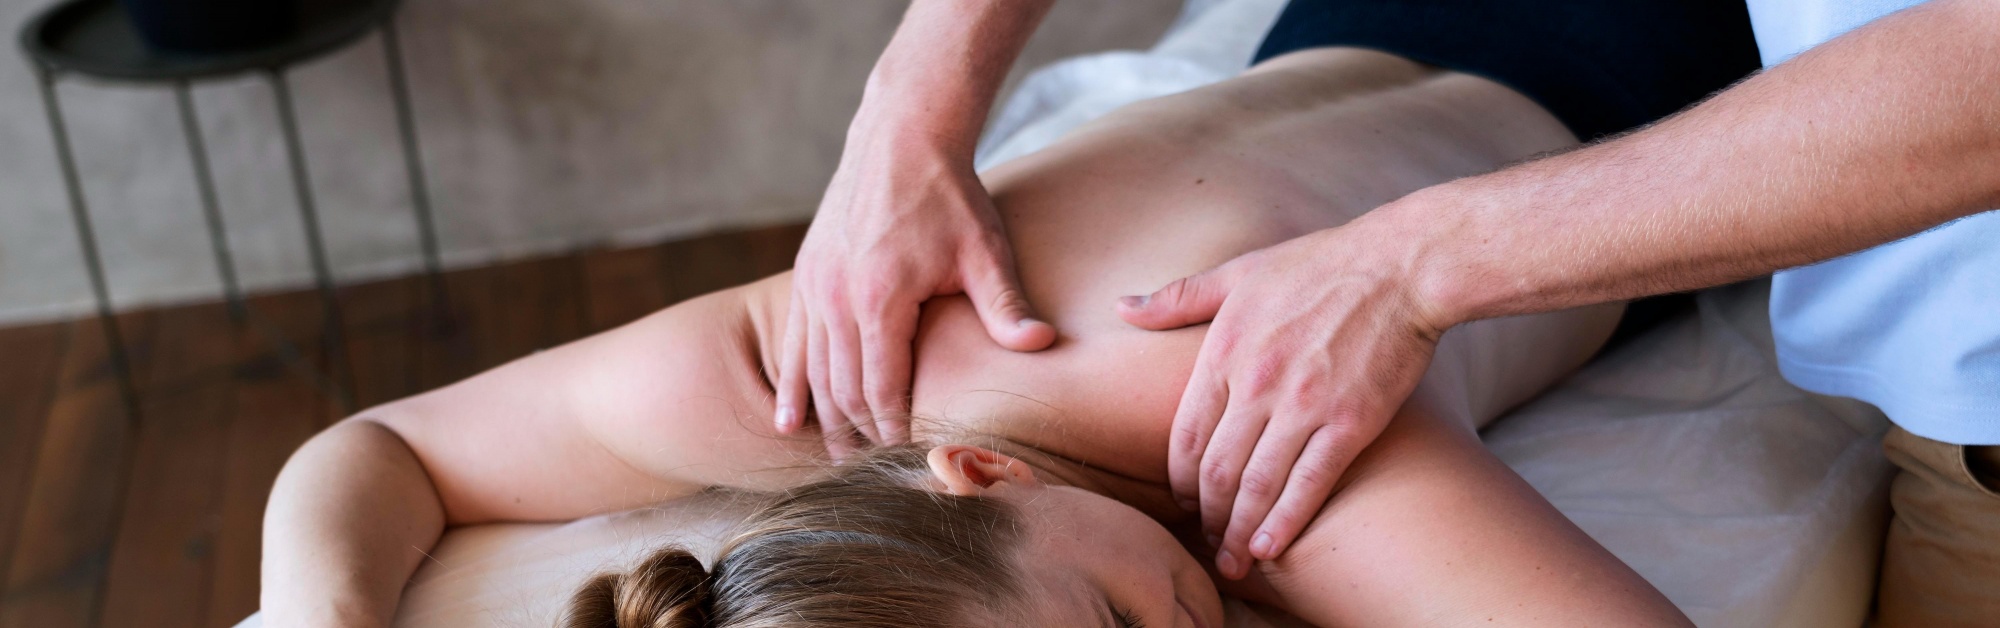 Как делать расслабляющий массаж: основные правила и техники